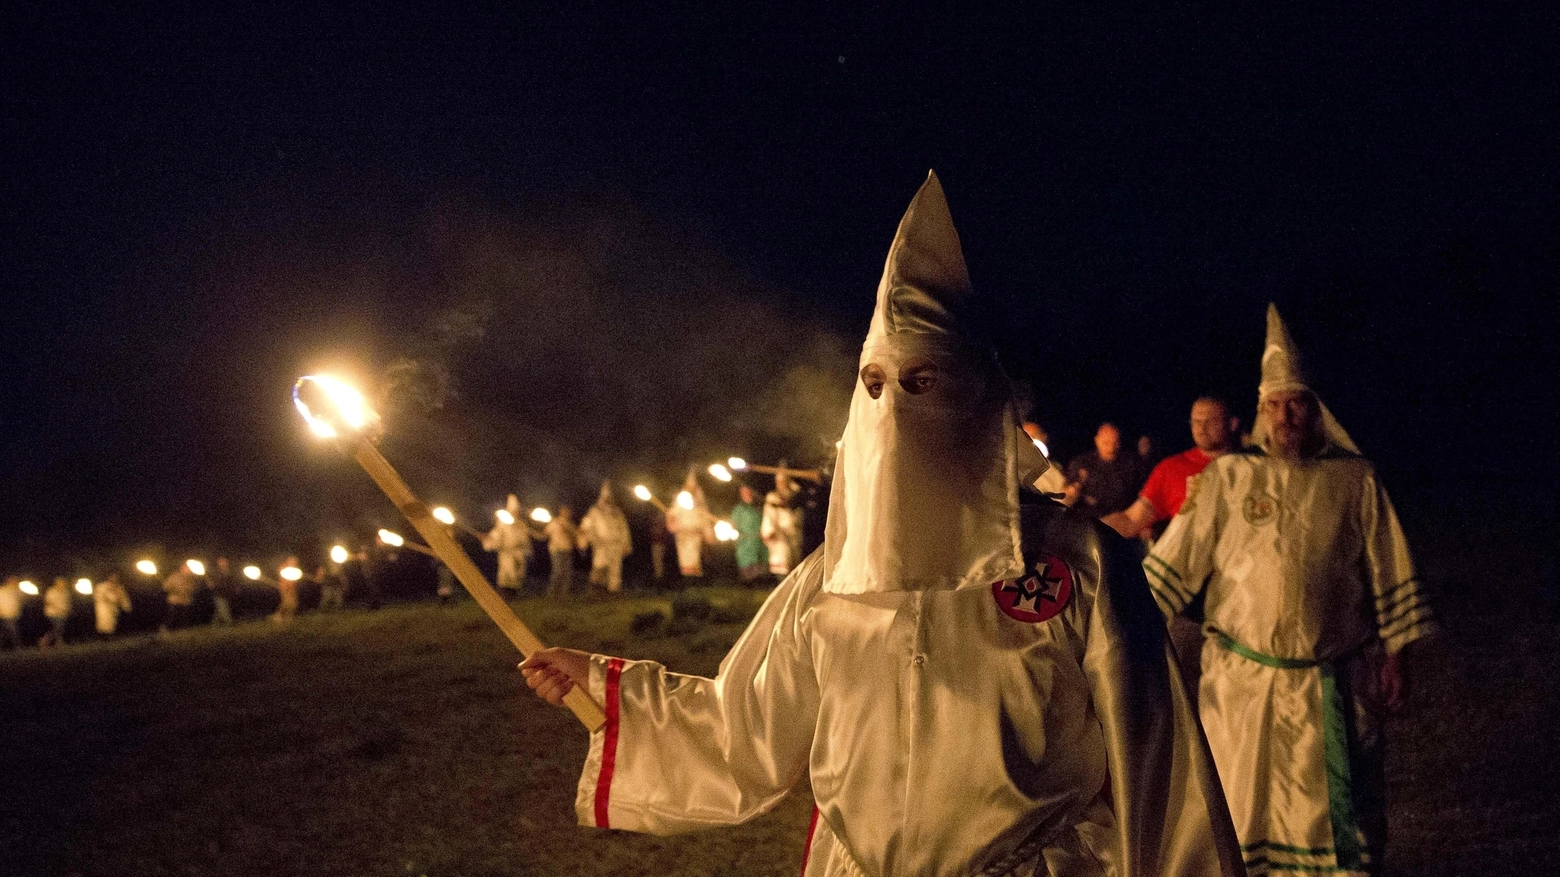 Il 'Klan' ha organizzato la manifestazione per il 3 dicembre: "Trump race united my people", dove race in inglese indica sia corsa che razza